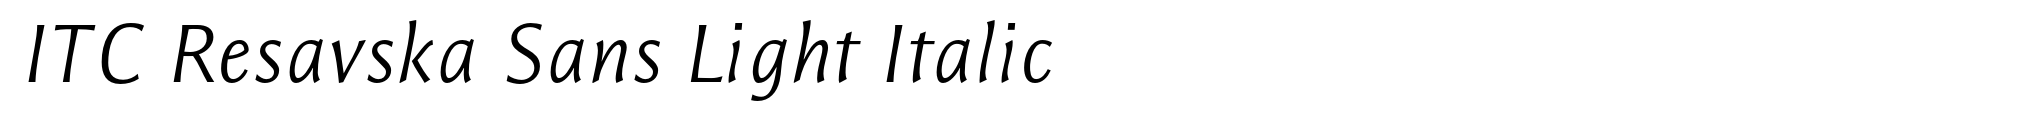 ITC Resavska Sans Light Italic image